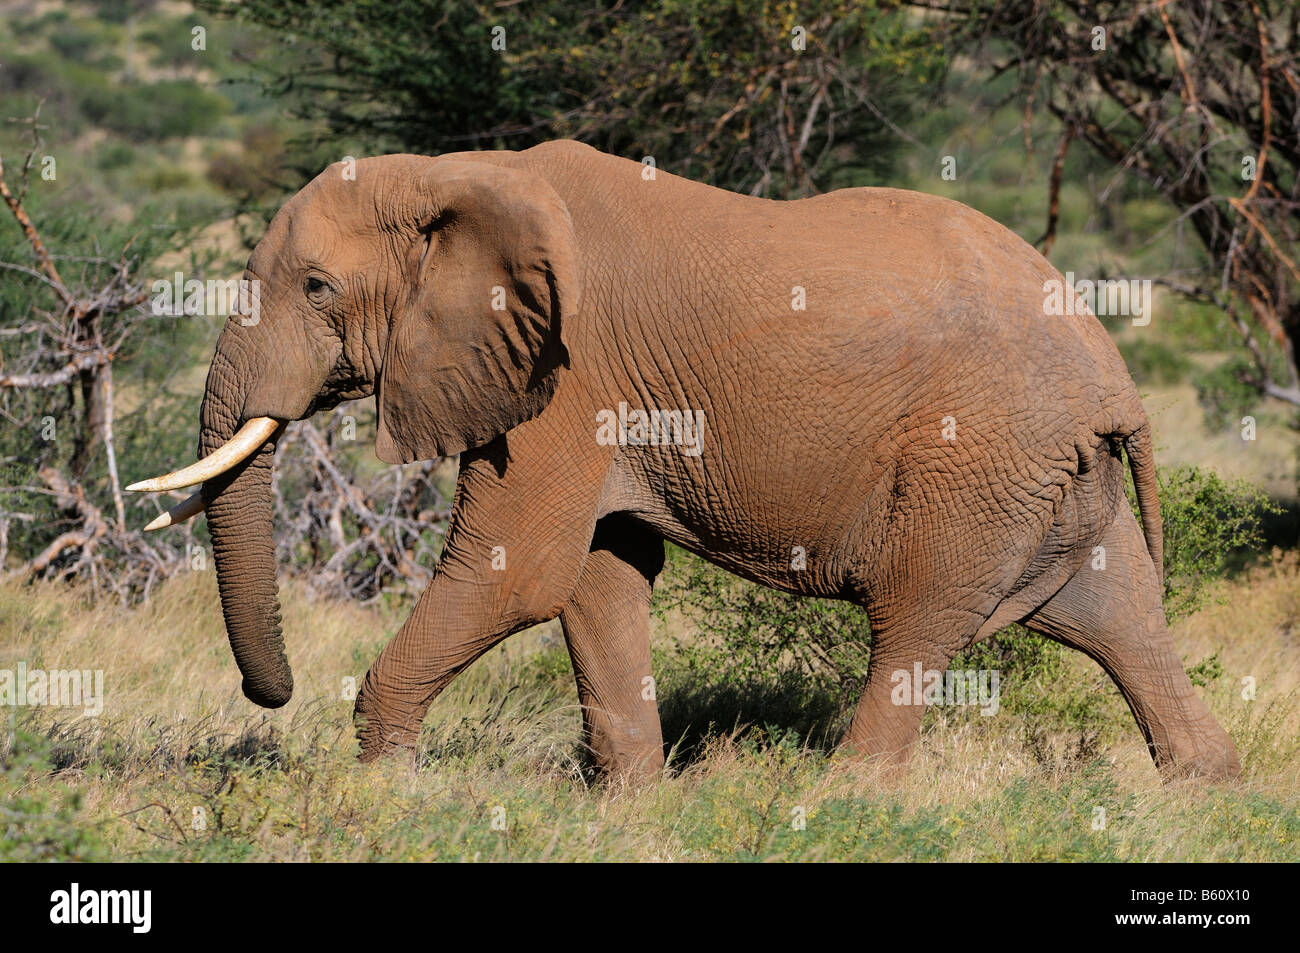 Bush Elefante africano (Loxodonta africana), el toro, la Reserva Nacional de Samburu, Kenya, Africa. Foto de stock